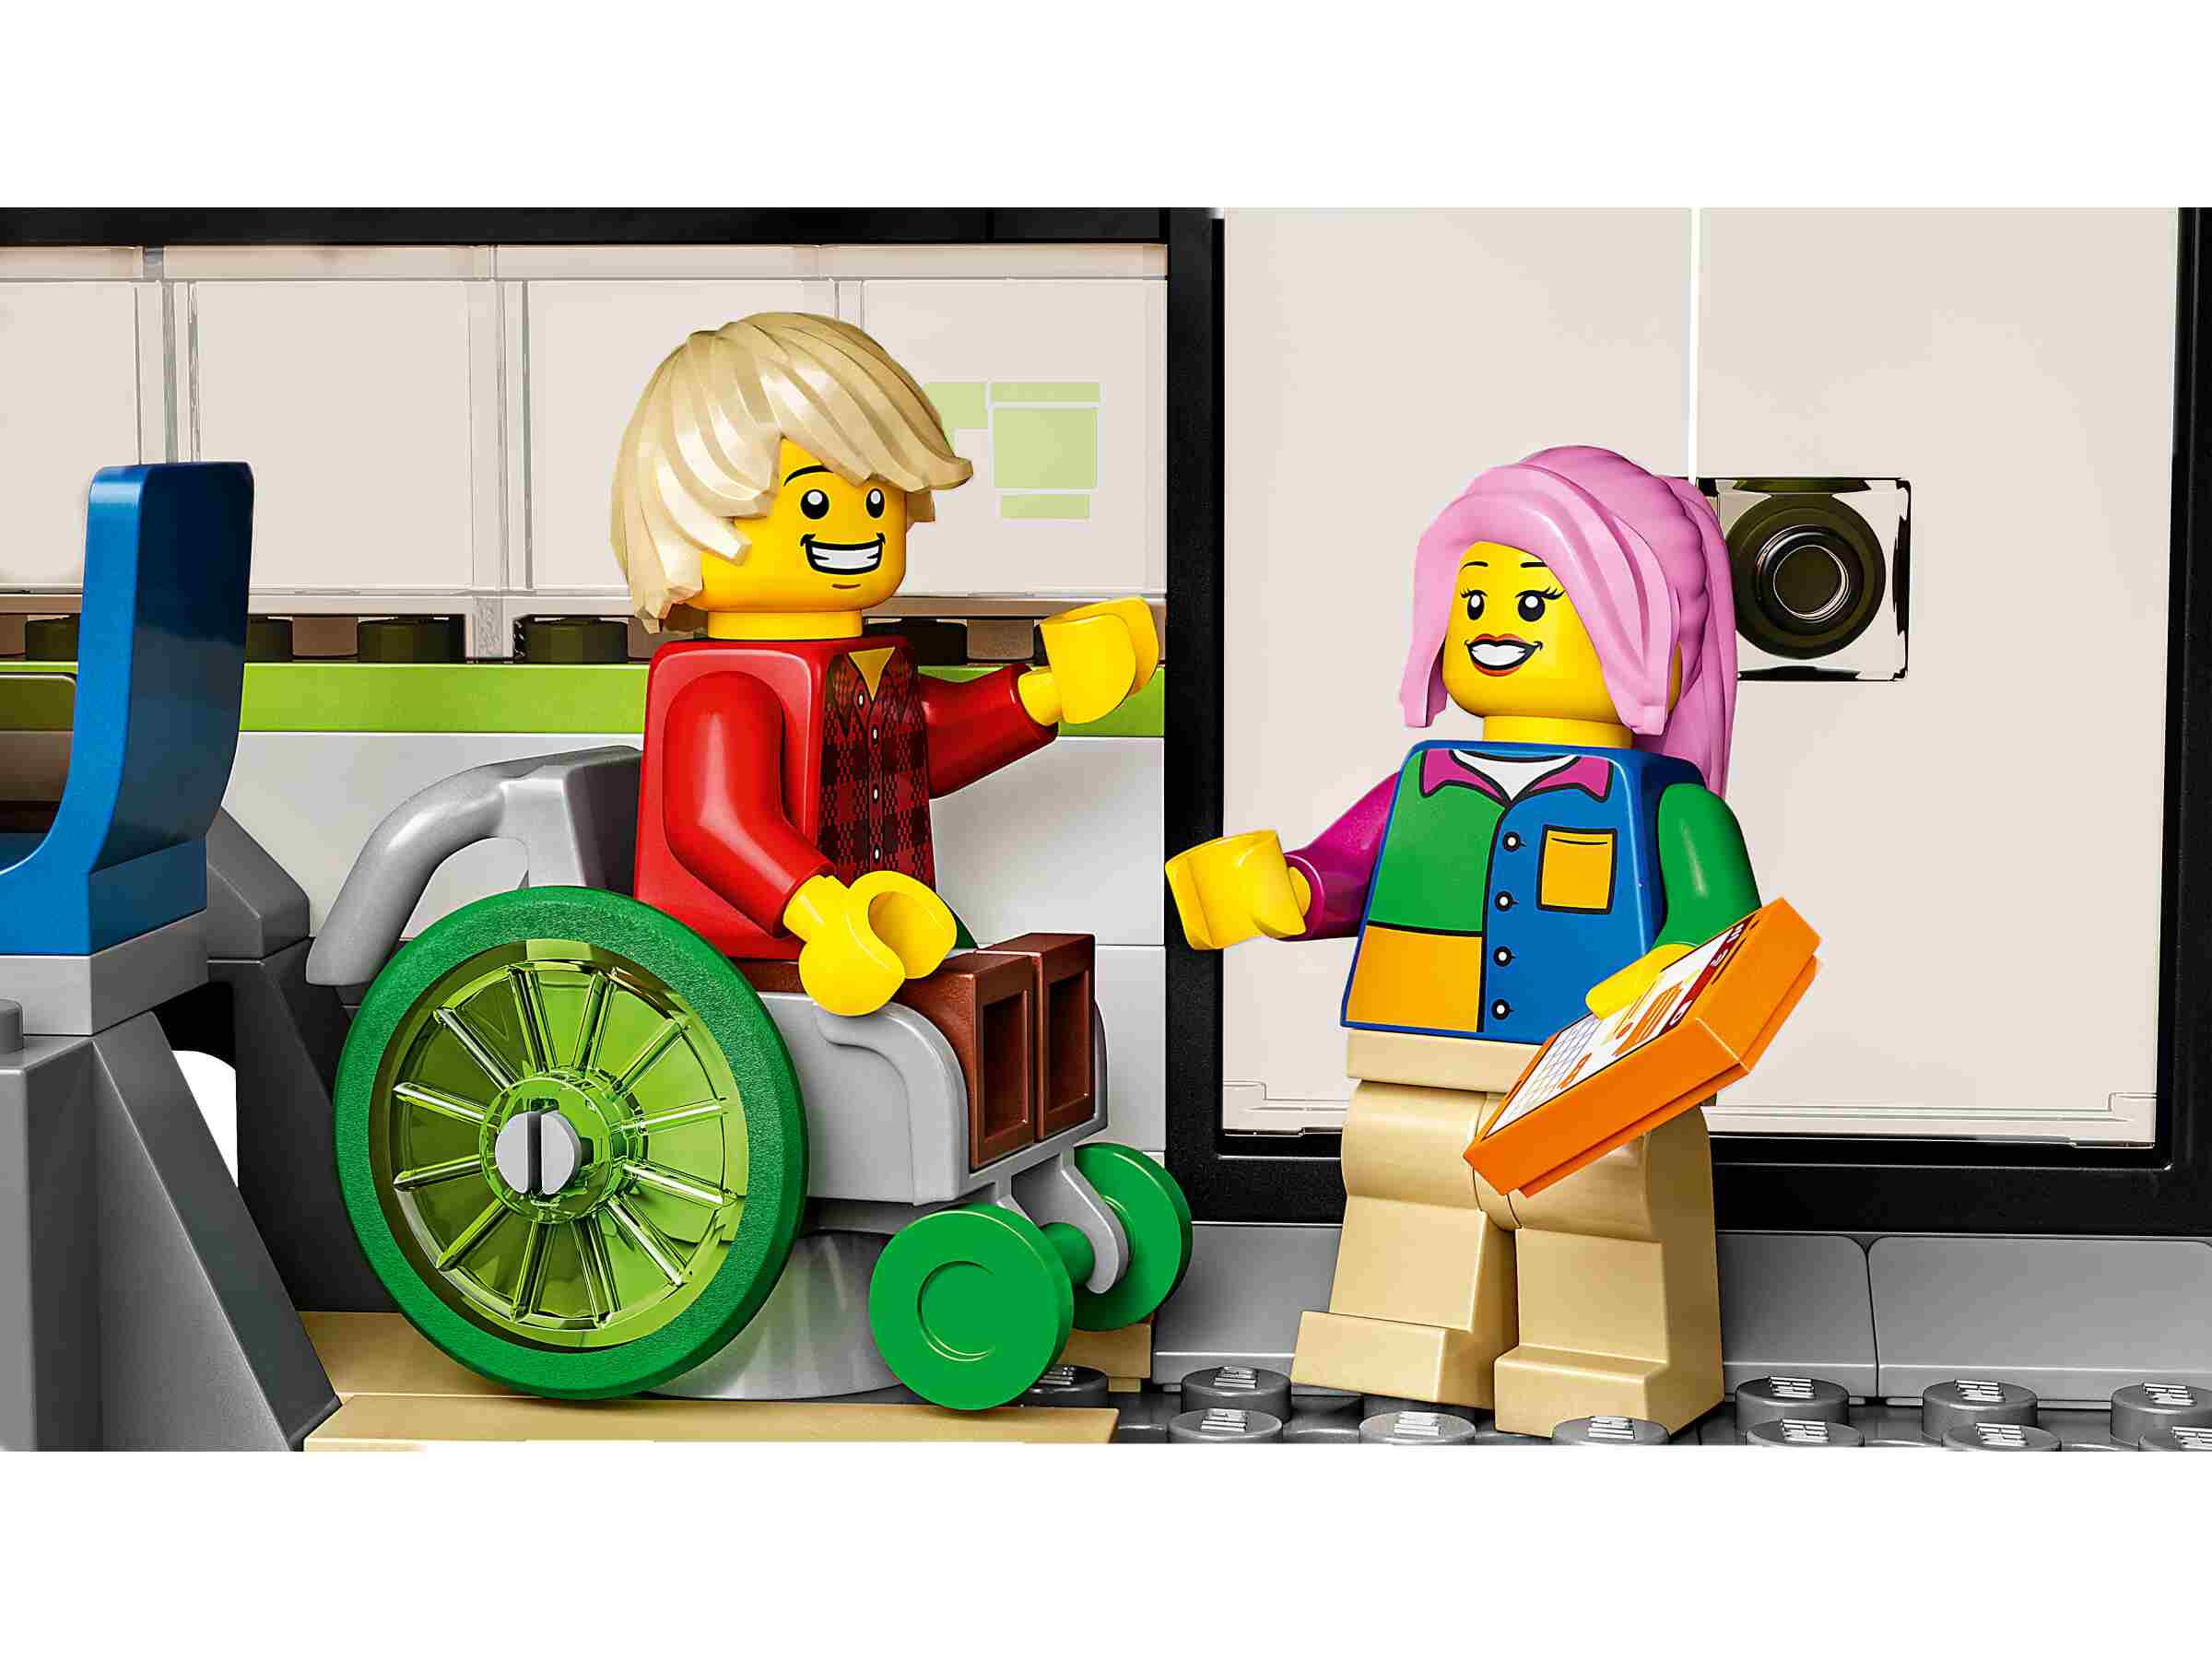 LEGO 60337 City Personen-Schnellzug, ferngesteuerter Zug mit Scheinwerfern